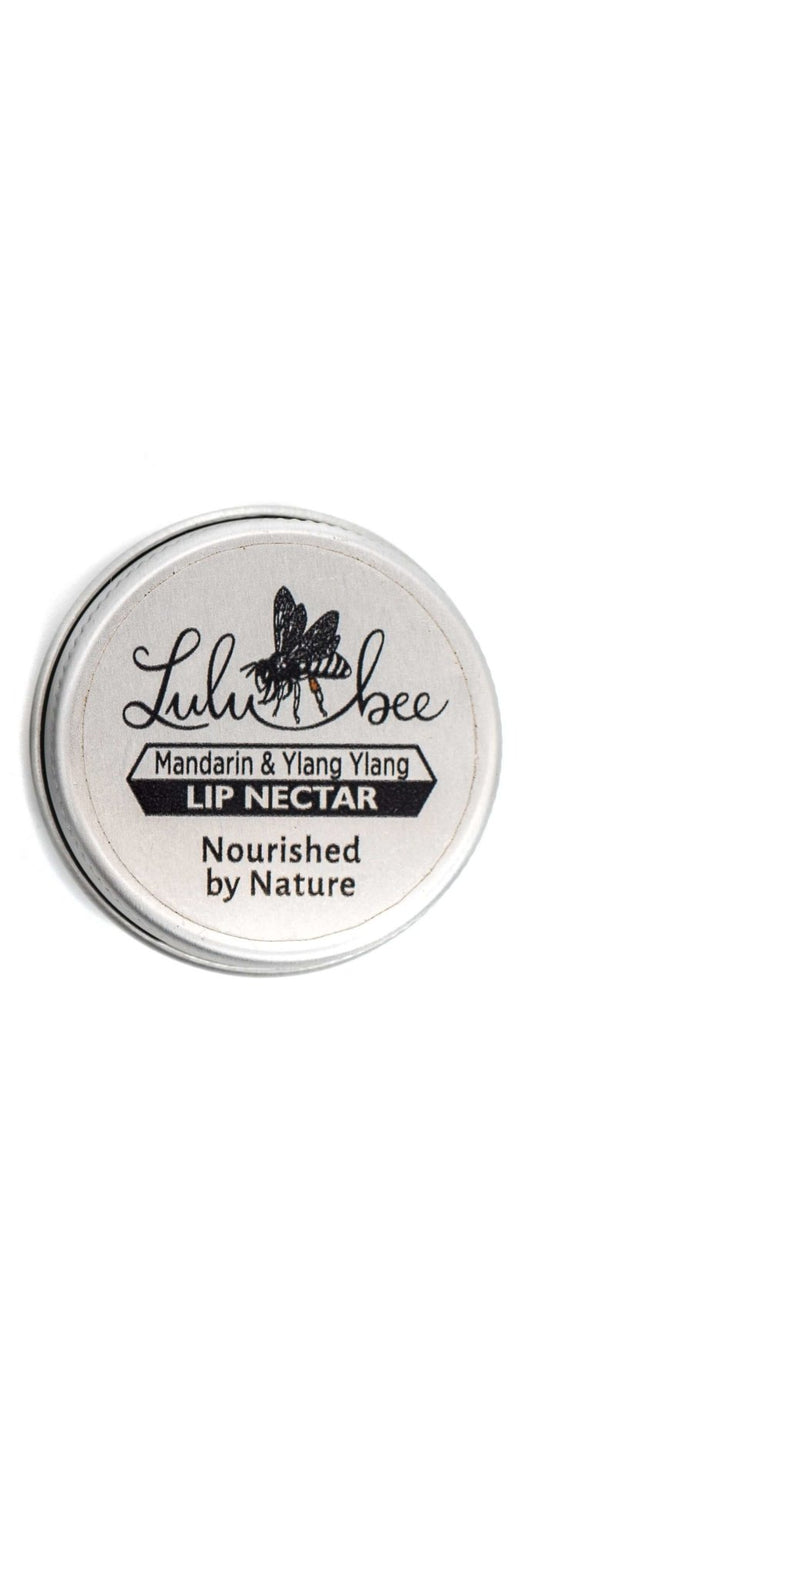 LuluBee Lip Nectar Mandarin & Ylang Ylang 15ml - Shopping4Africa